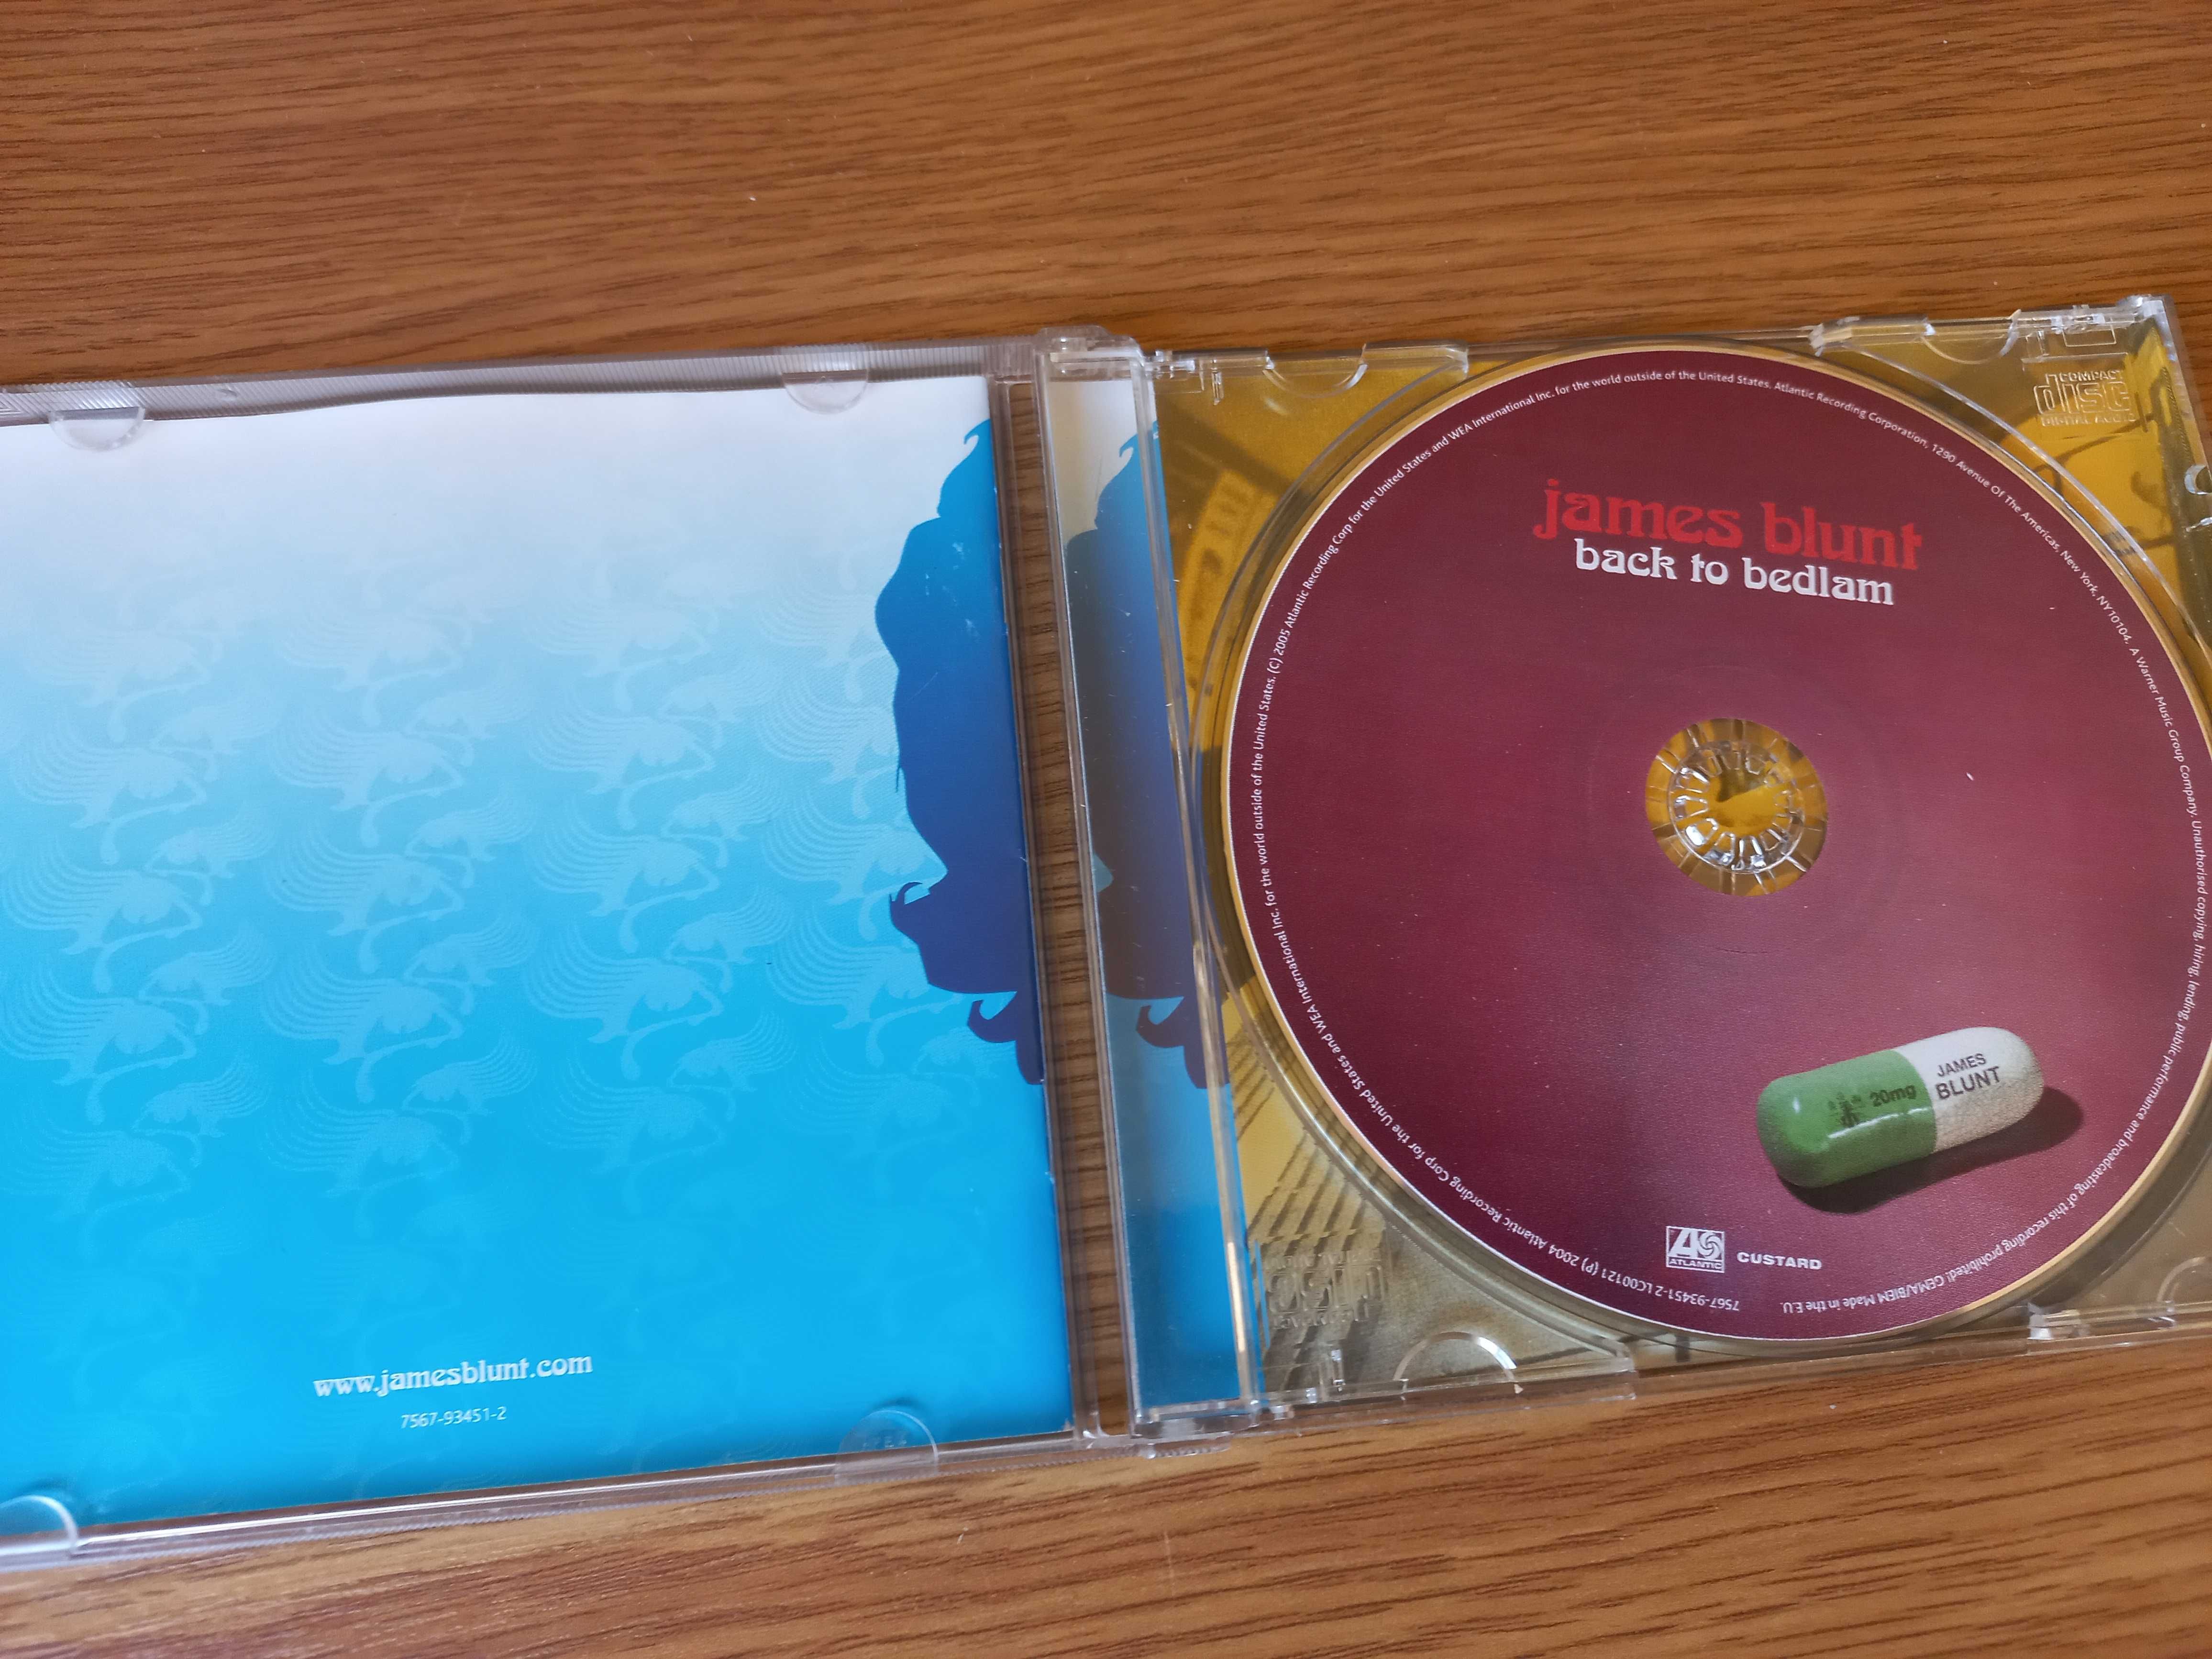 !! przy zakupie 2 płyta CD za 5 zł !! - James Blunt, Back to bedlam